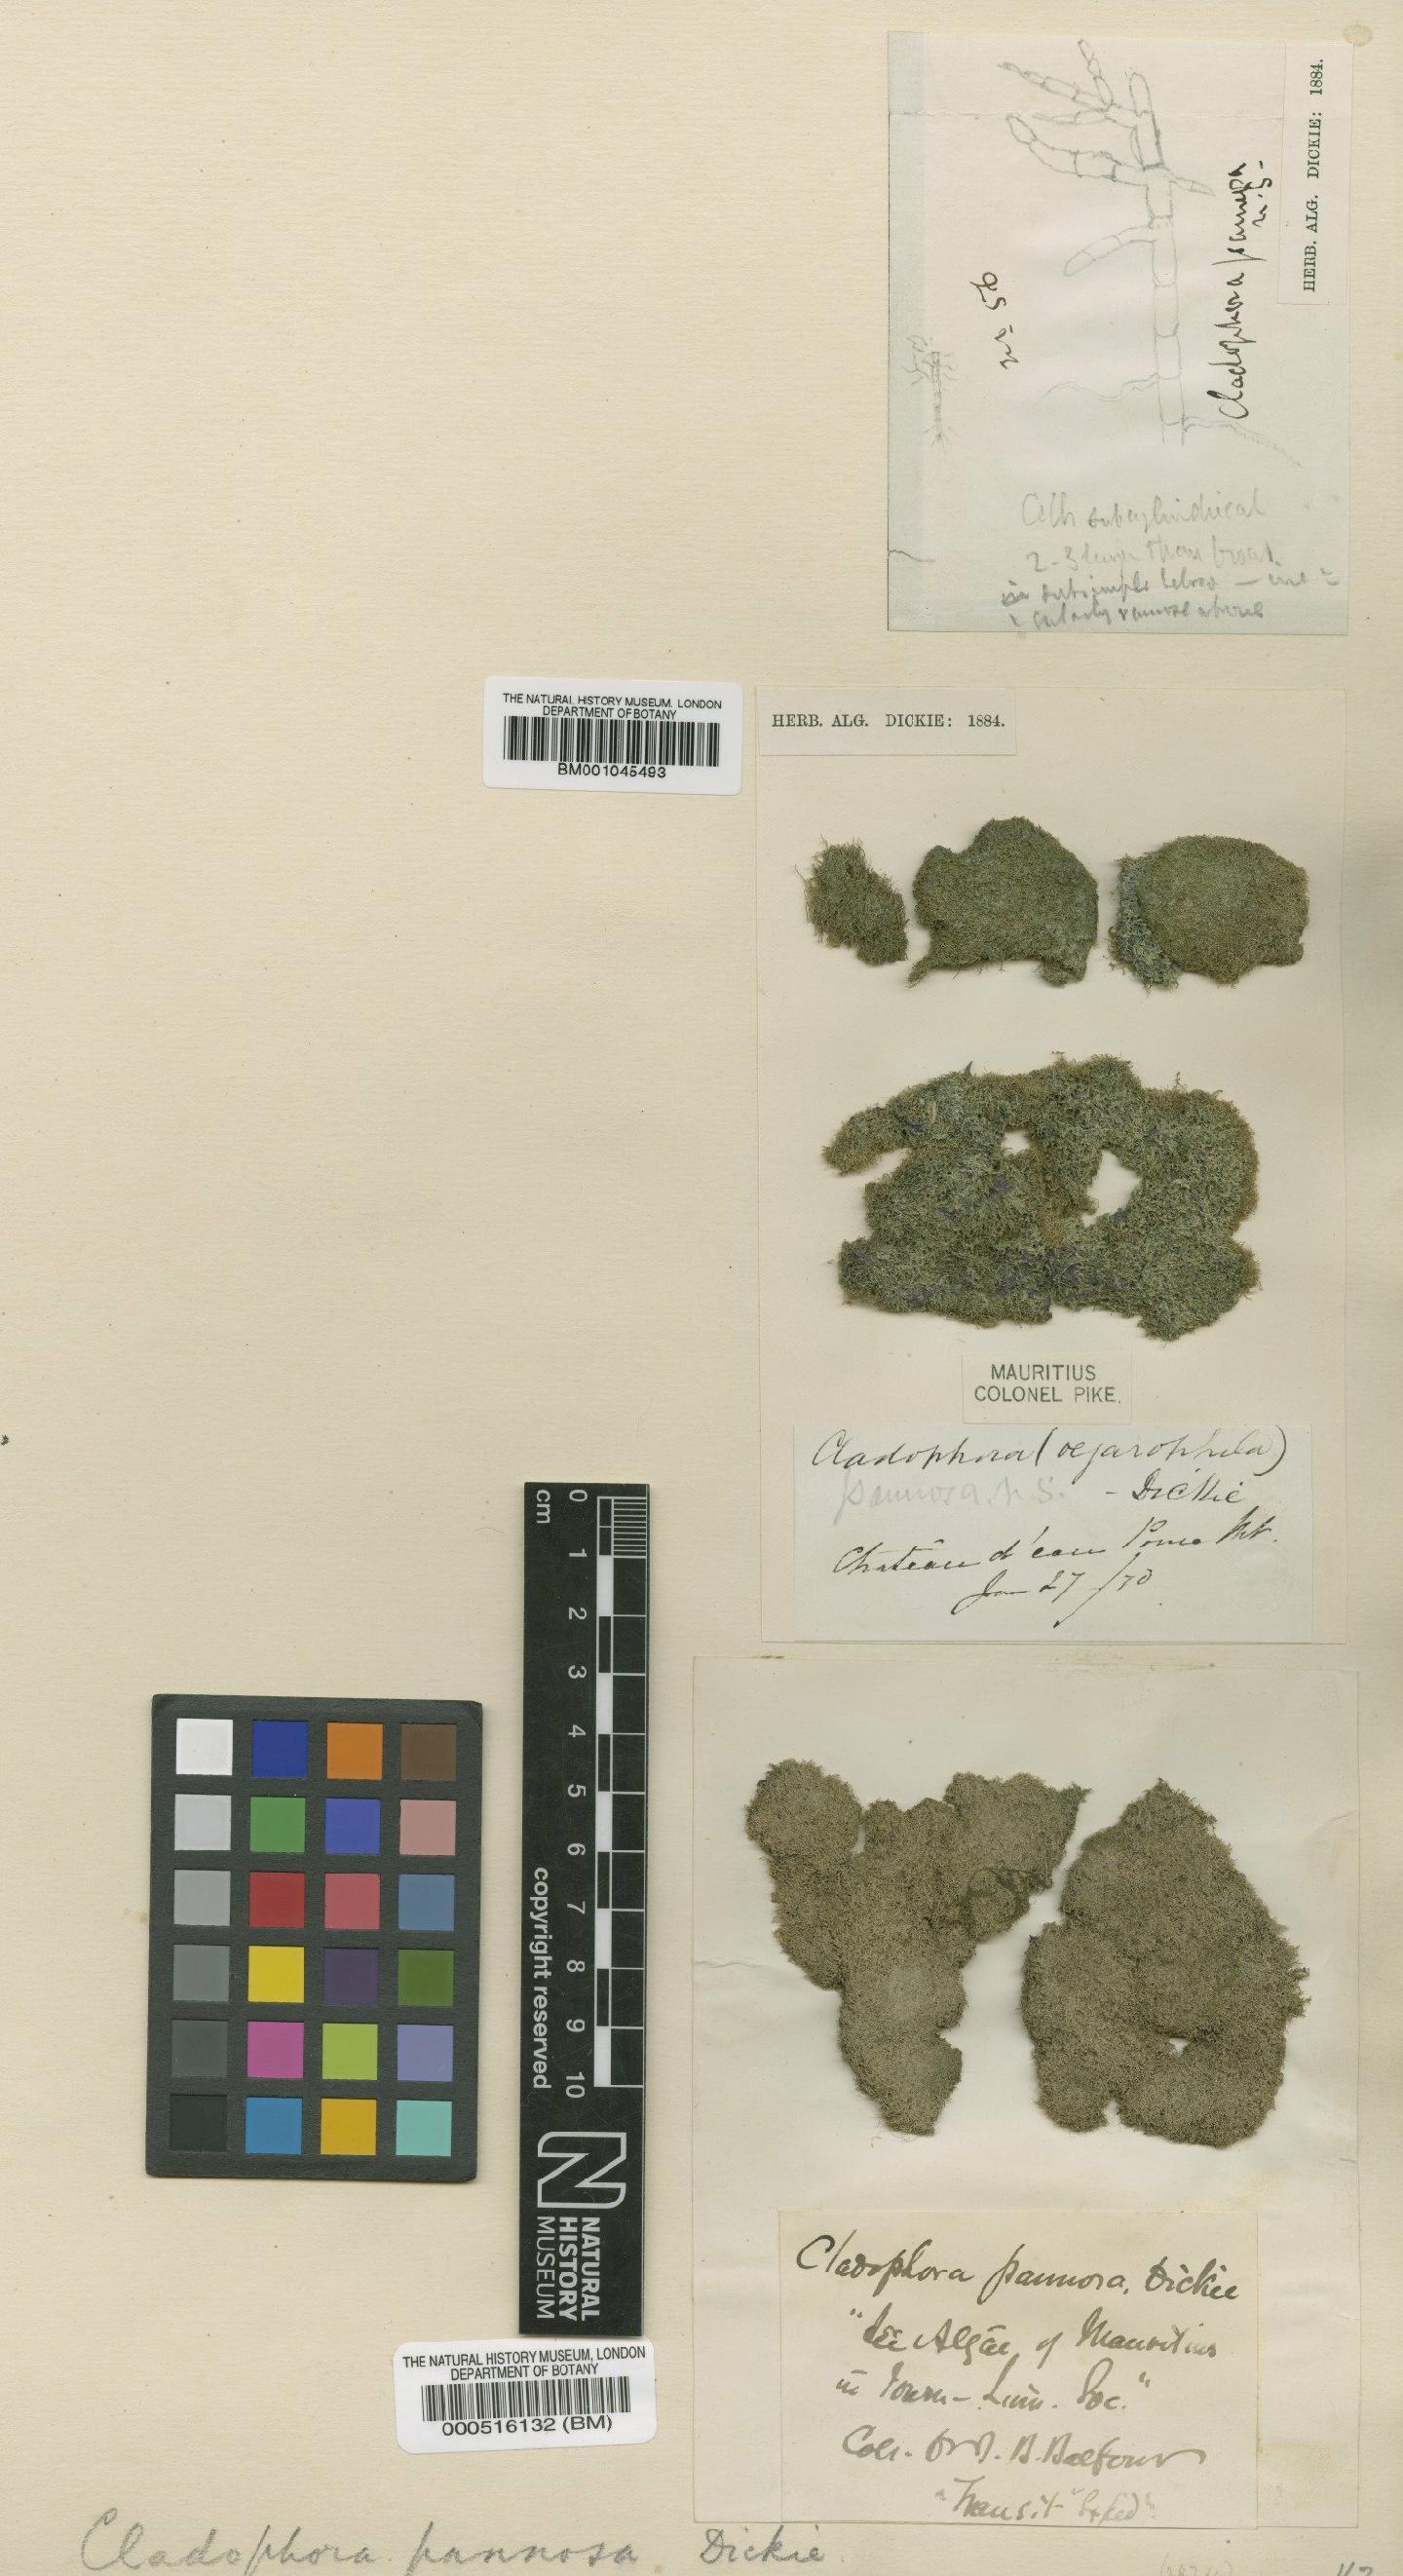 To NHMUK collection (Cladophora pannosa Dickie; TYPE; NHMUK:ecatalogue:4830468)